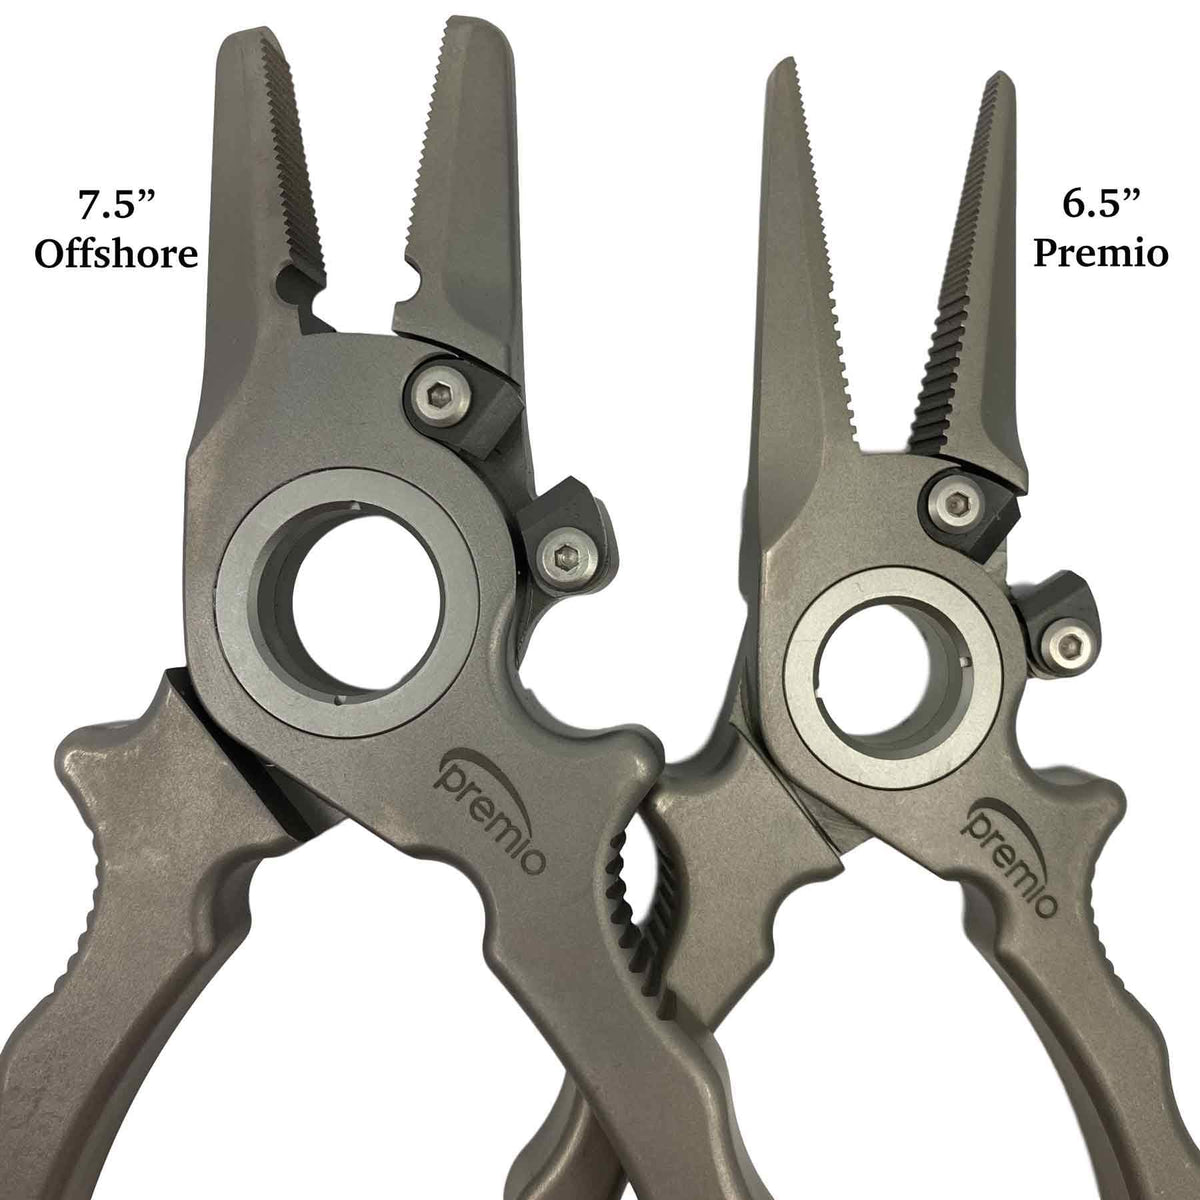 Danco Split Ring Pliers/Braid Cutters 5